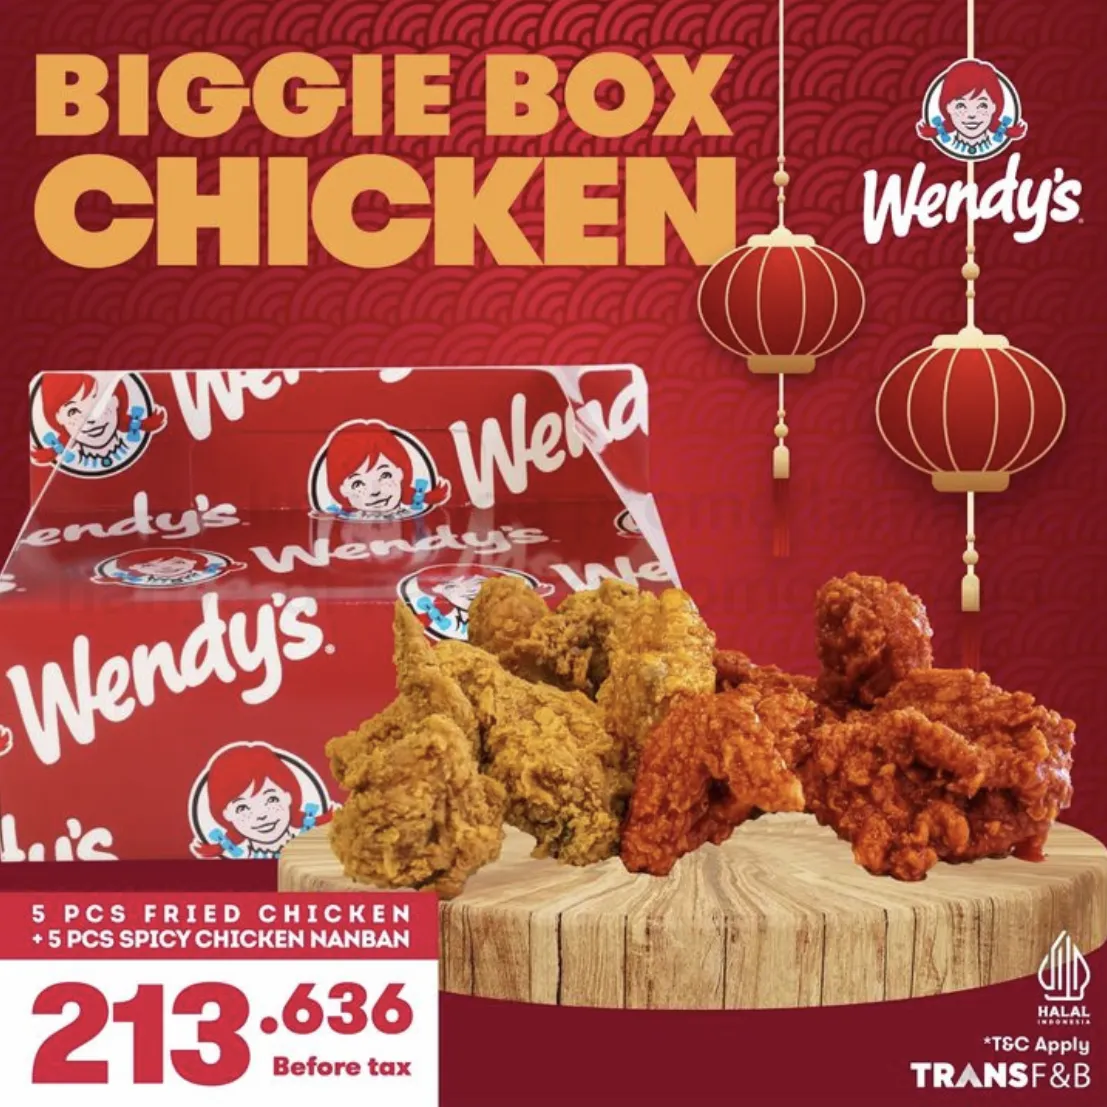 Promo WENDYS Biggie Box Chicken with 5pcs Spicy Chicken Nanban + 5pcs Fried Chicken